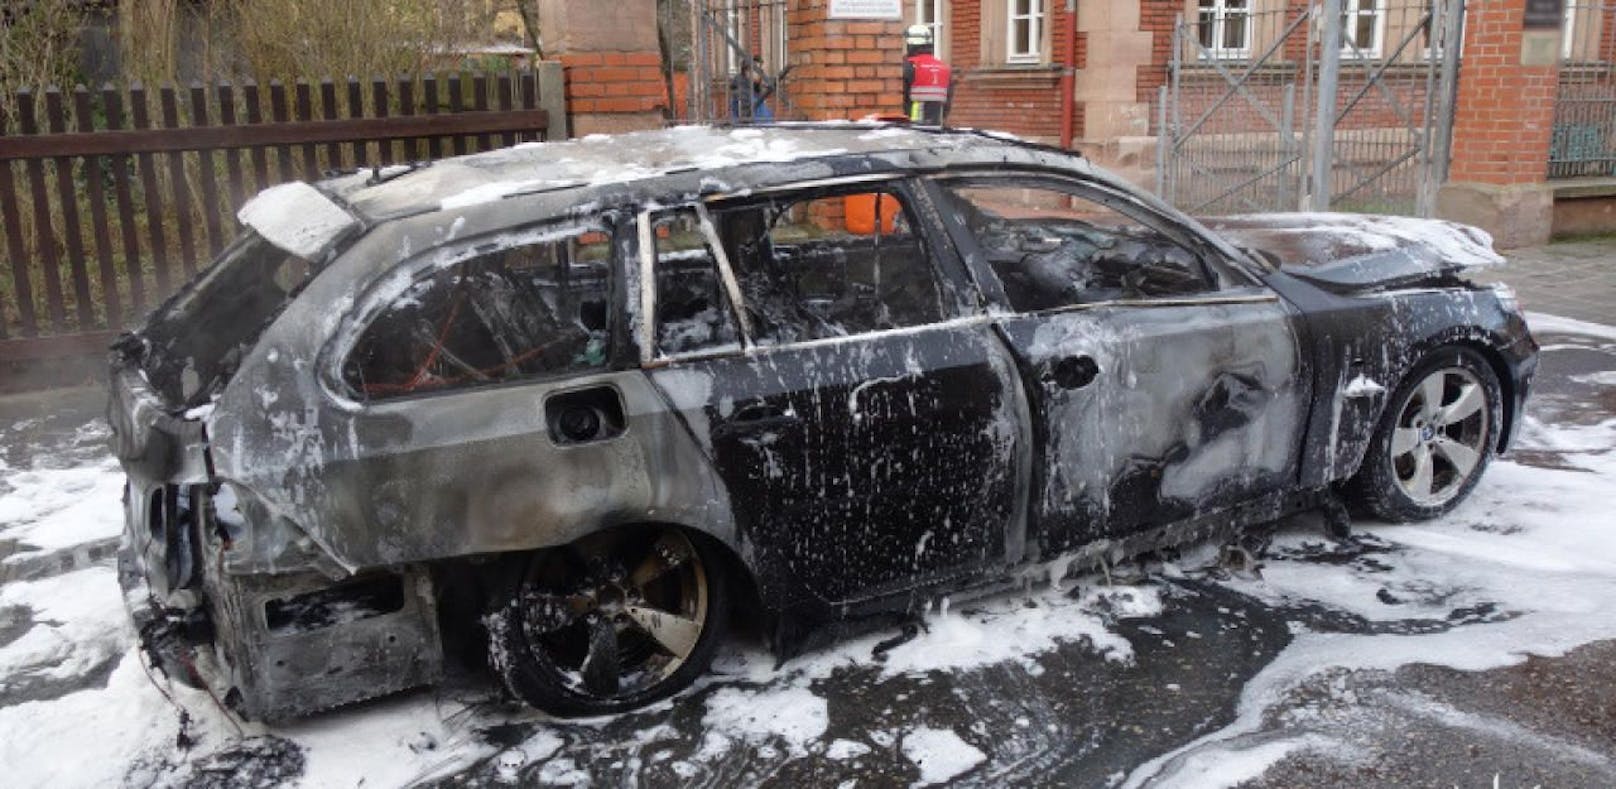 Die Polizei Mittelfranken veröffentlichte ein Foto des völlig ausgebrannten BMW.